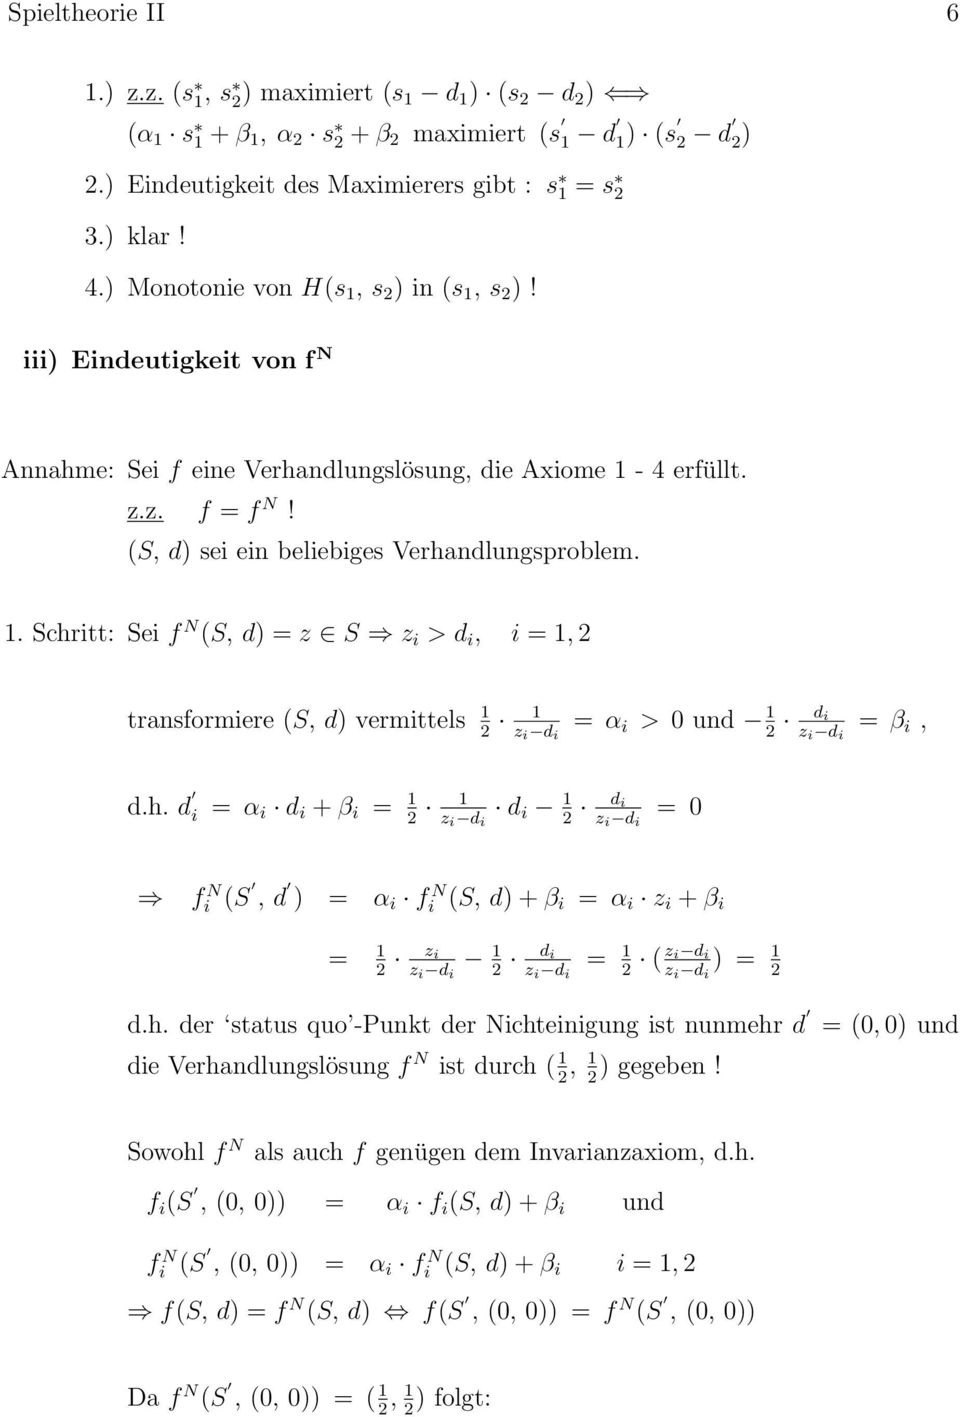 h. d i = α i d i + β i = 1 1 2 z i d i d i 1 d i 2 z i d i = 0 f N i (S, d ) = α i f N i (S, d) + β i = α i z i + β i = 1 2 z i z i d i 1 2 d i z i d i = 1 2 ( z i d i z i d i ) = 1 2 d.h. der status quo -Punkt der Nichteinigung ist nunmehr d die Verhandlungslösung f N ist durch ( 1 2, 1 2 ) gegeben!